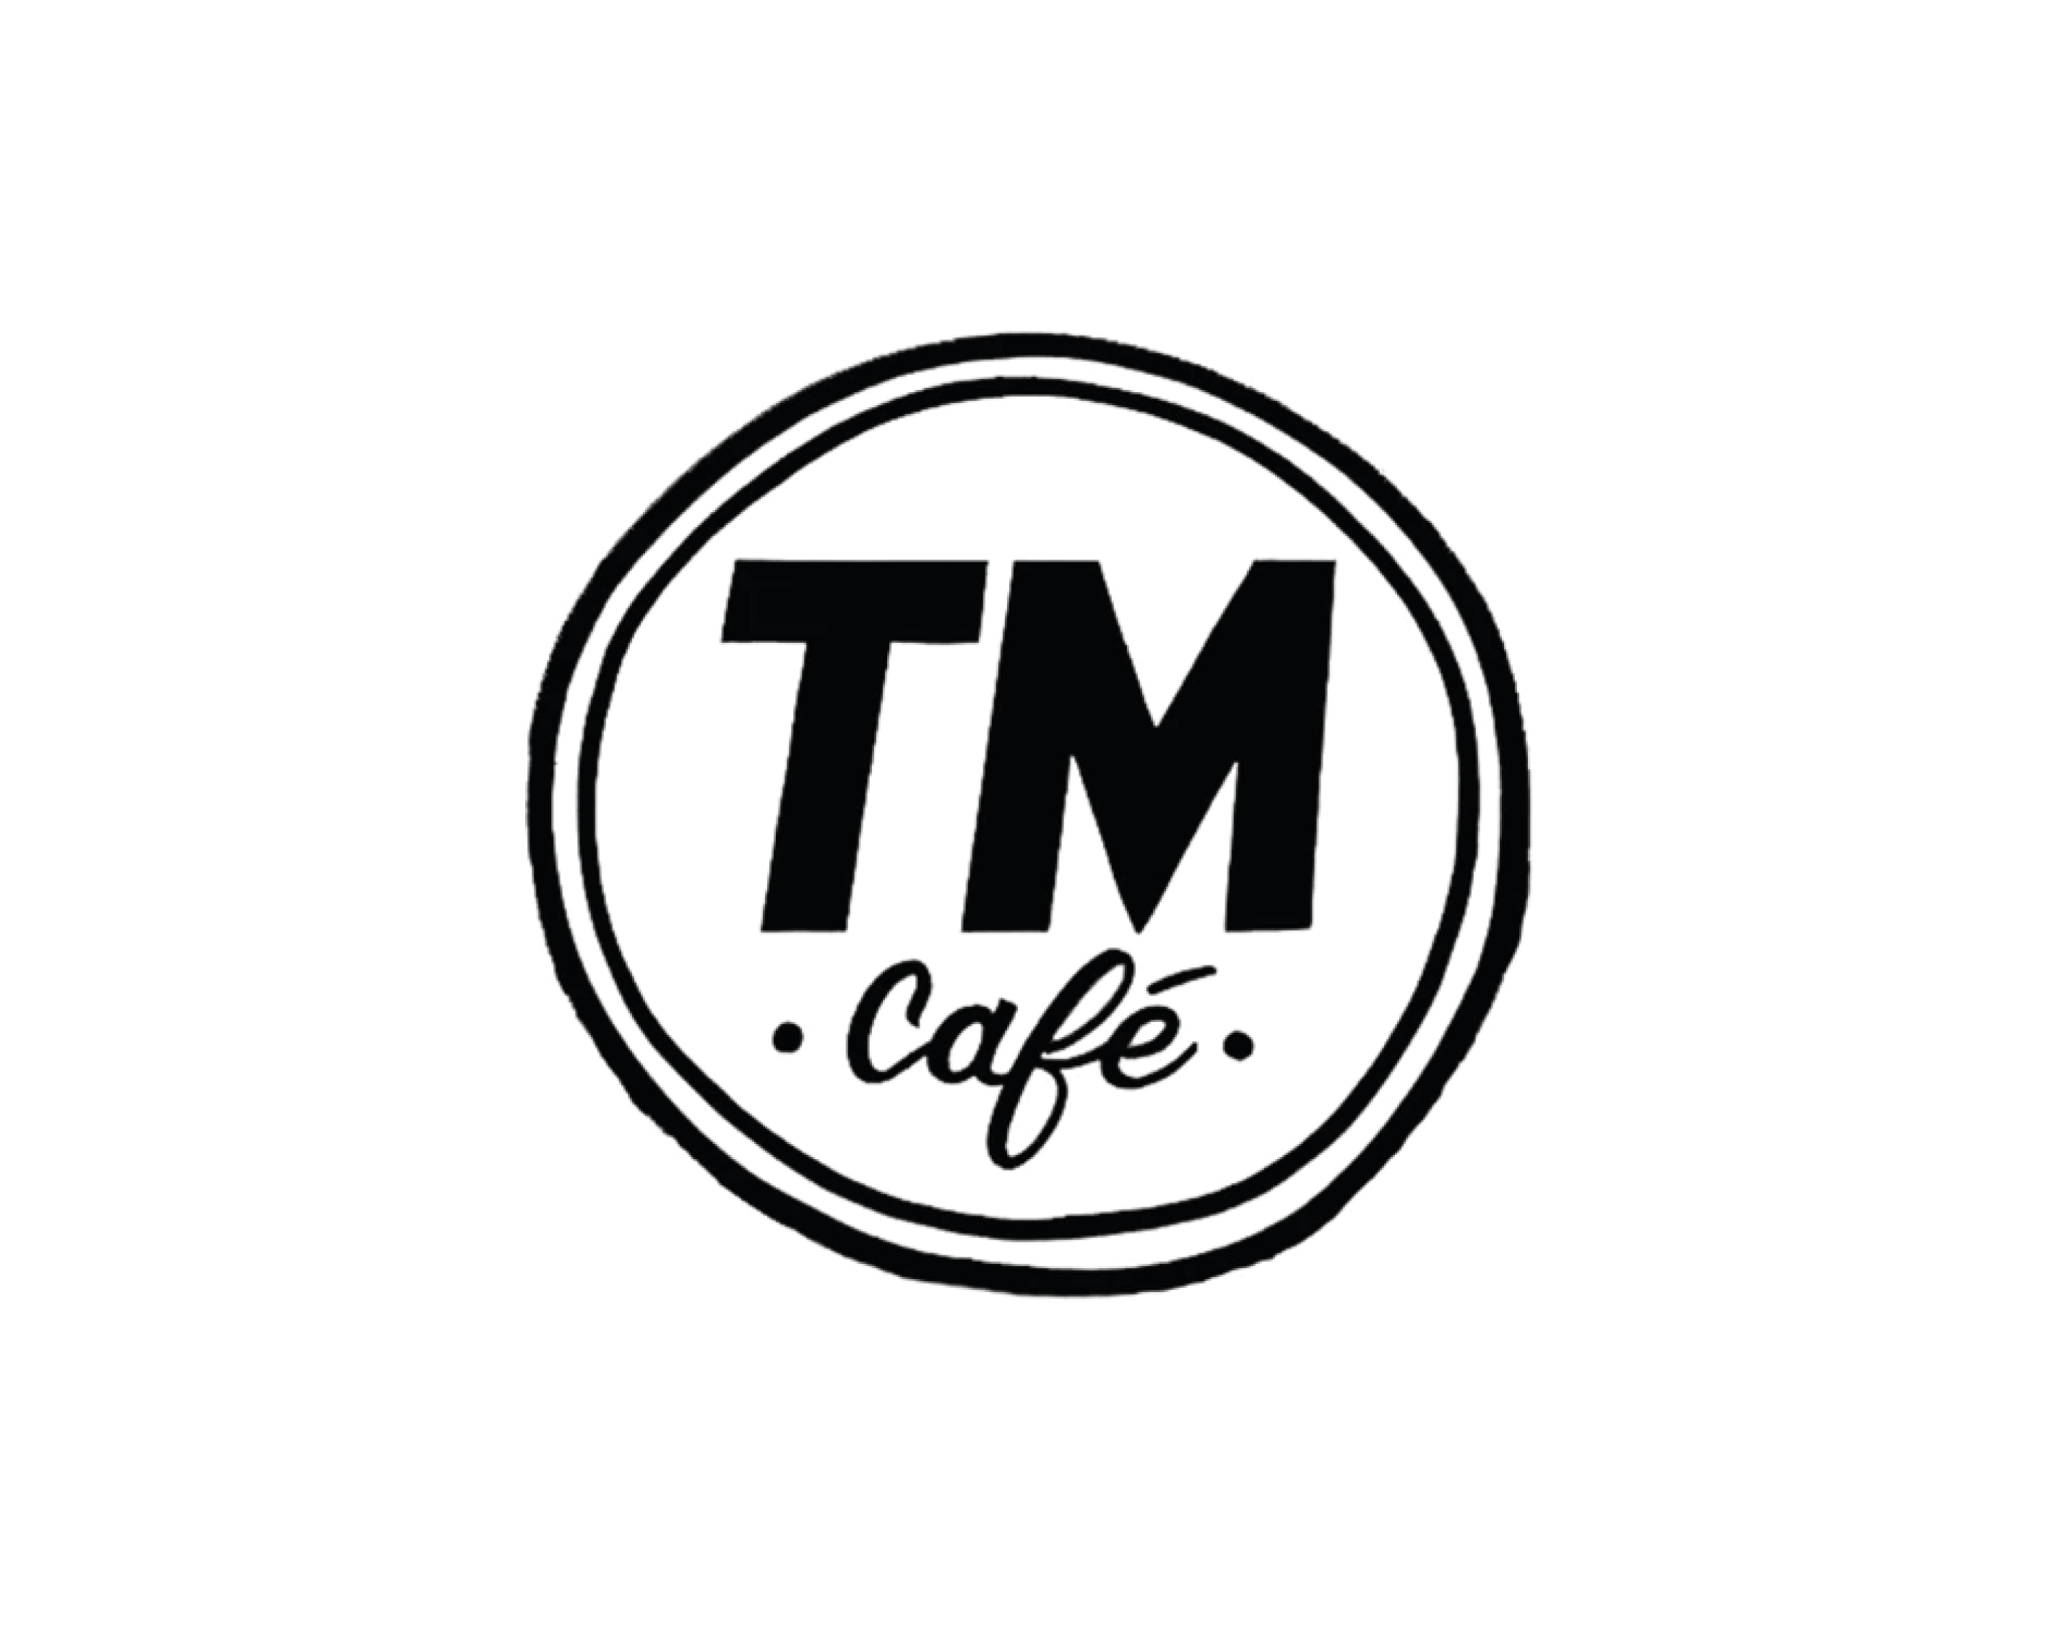 TMcafe